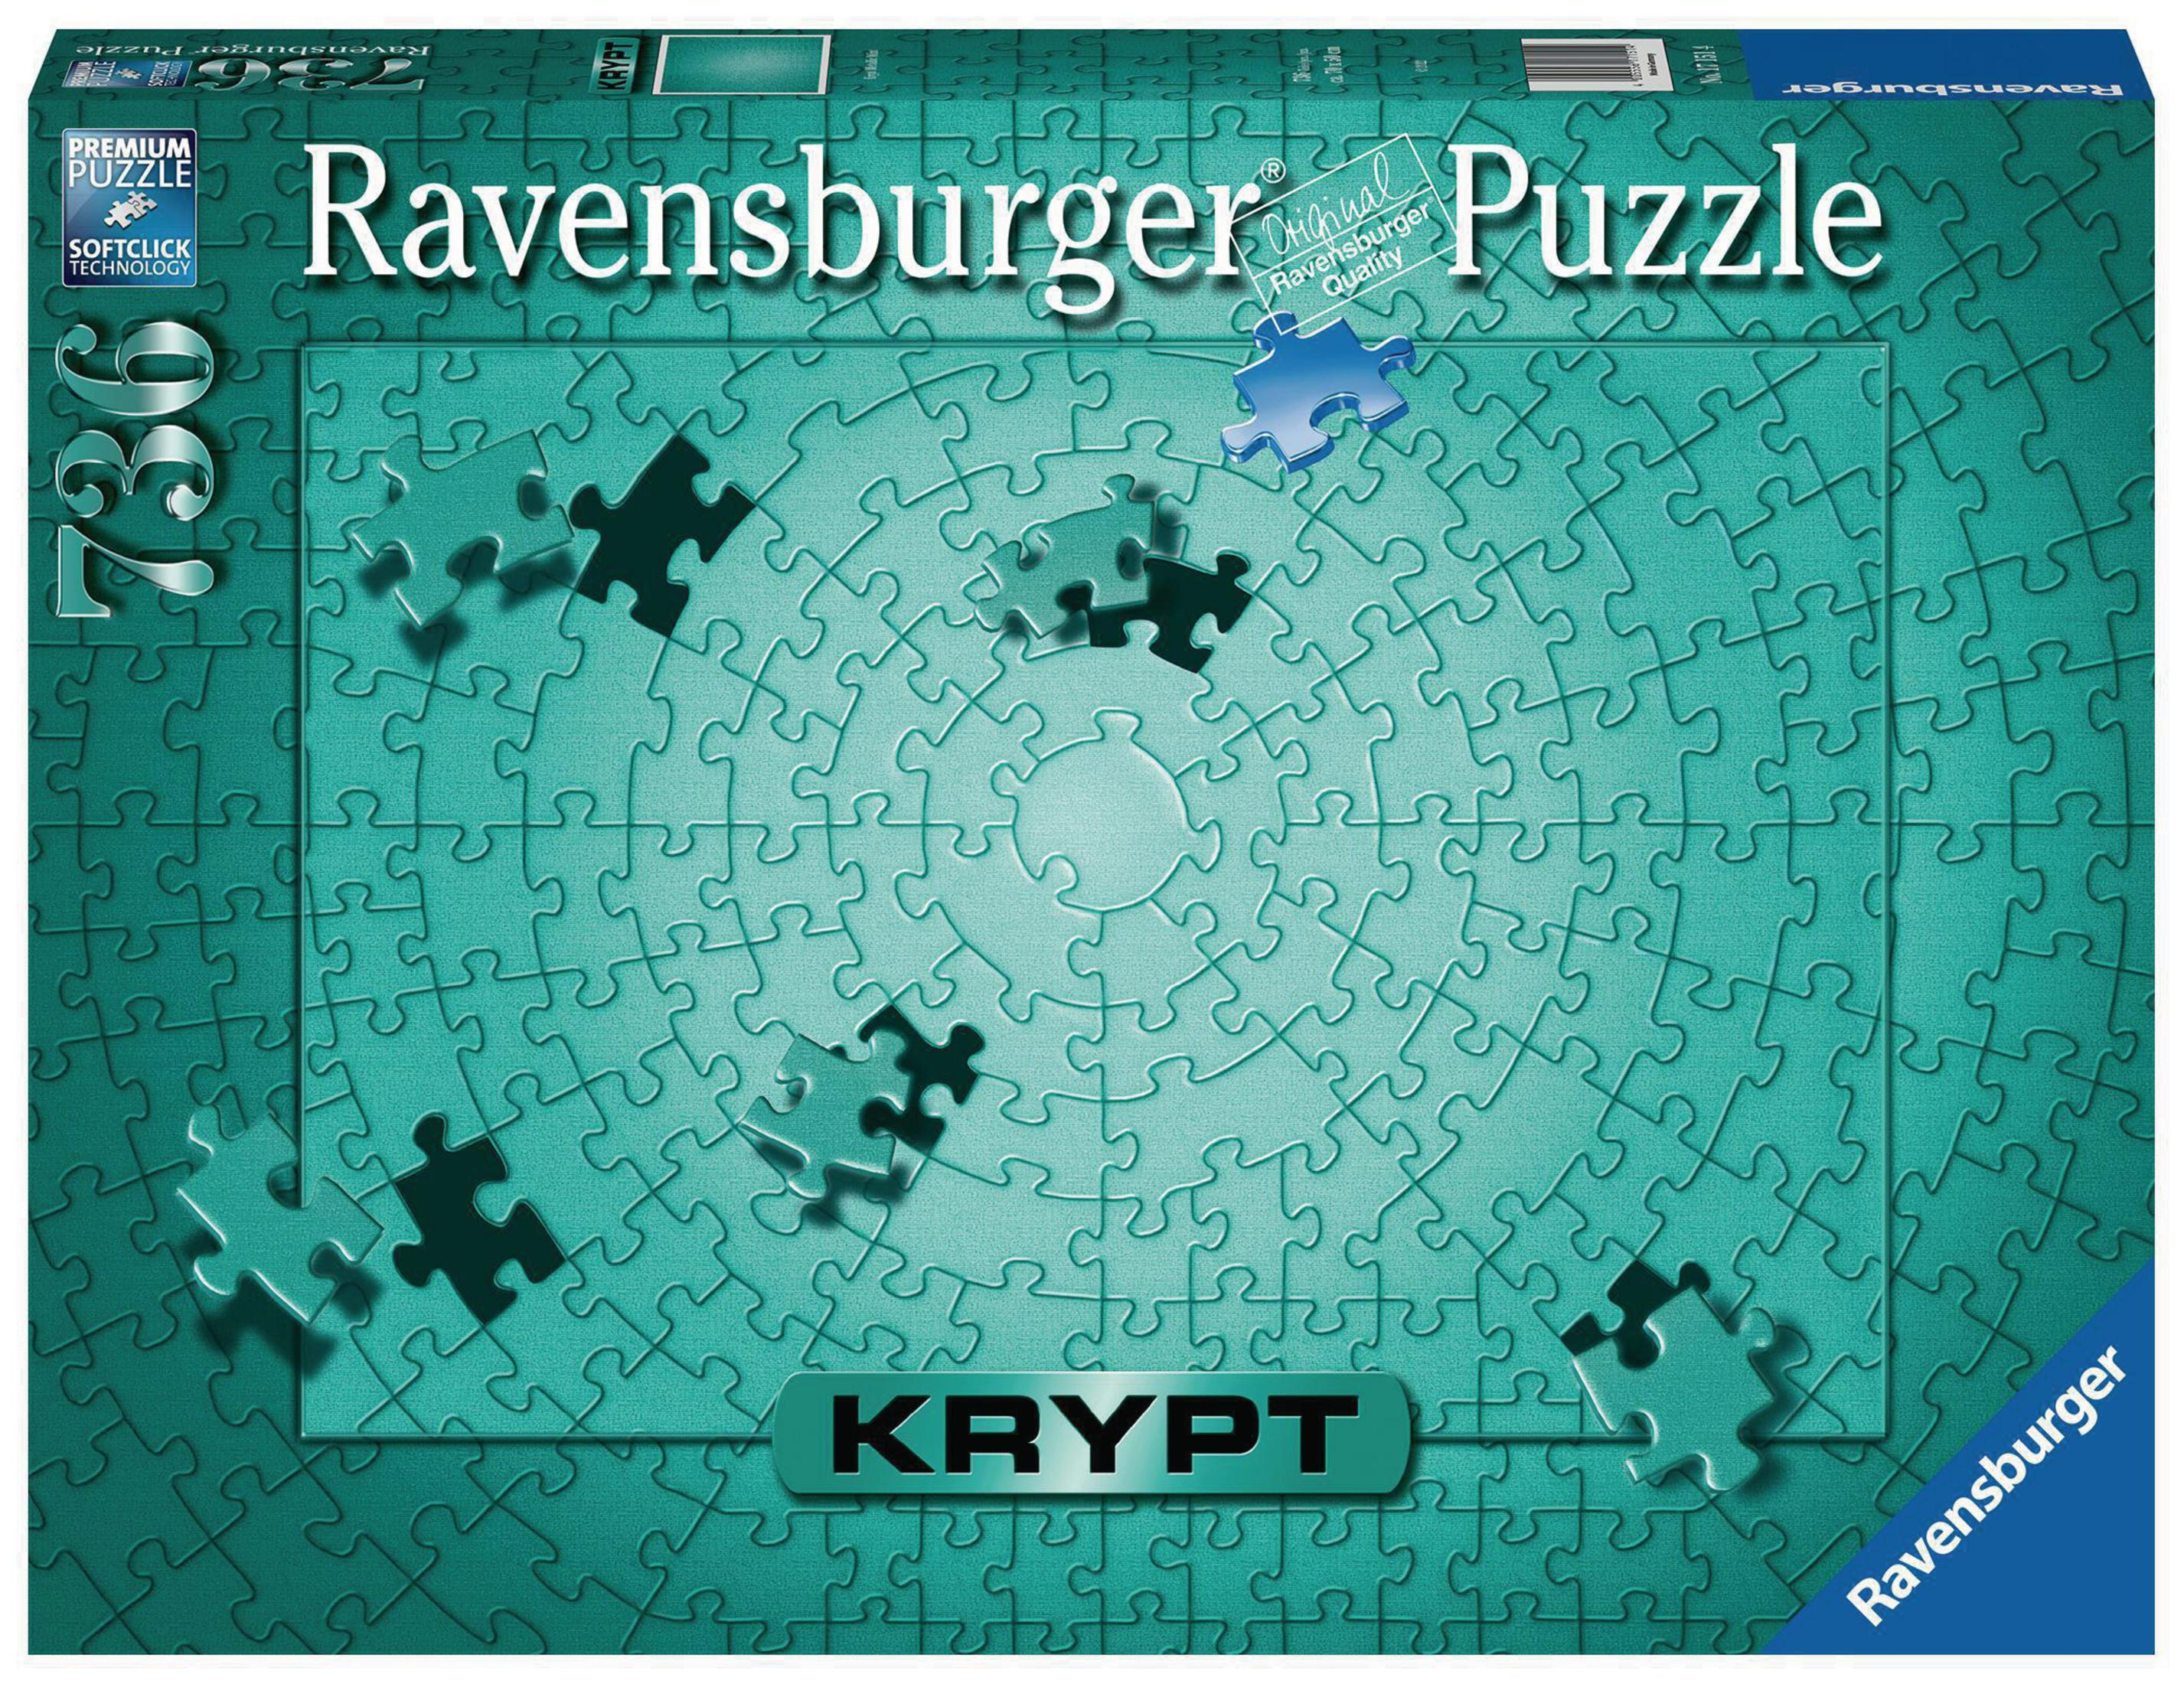 METALLIC Puzzle KRYPT 17151 RAVENSBURGER MINT